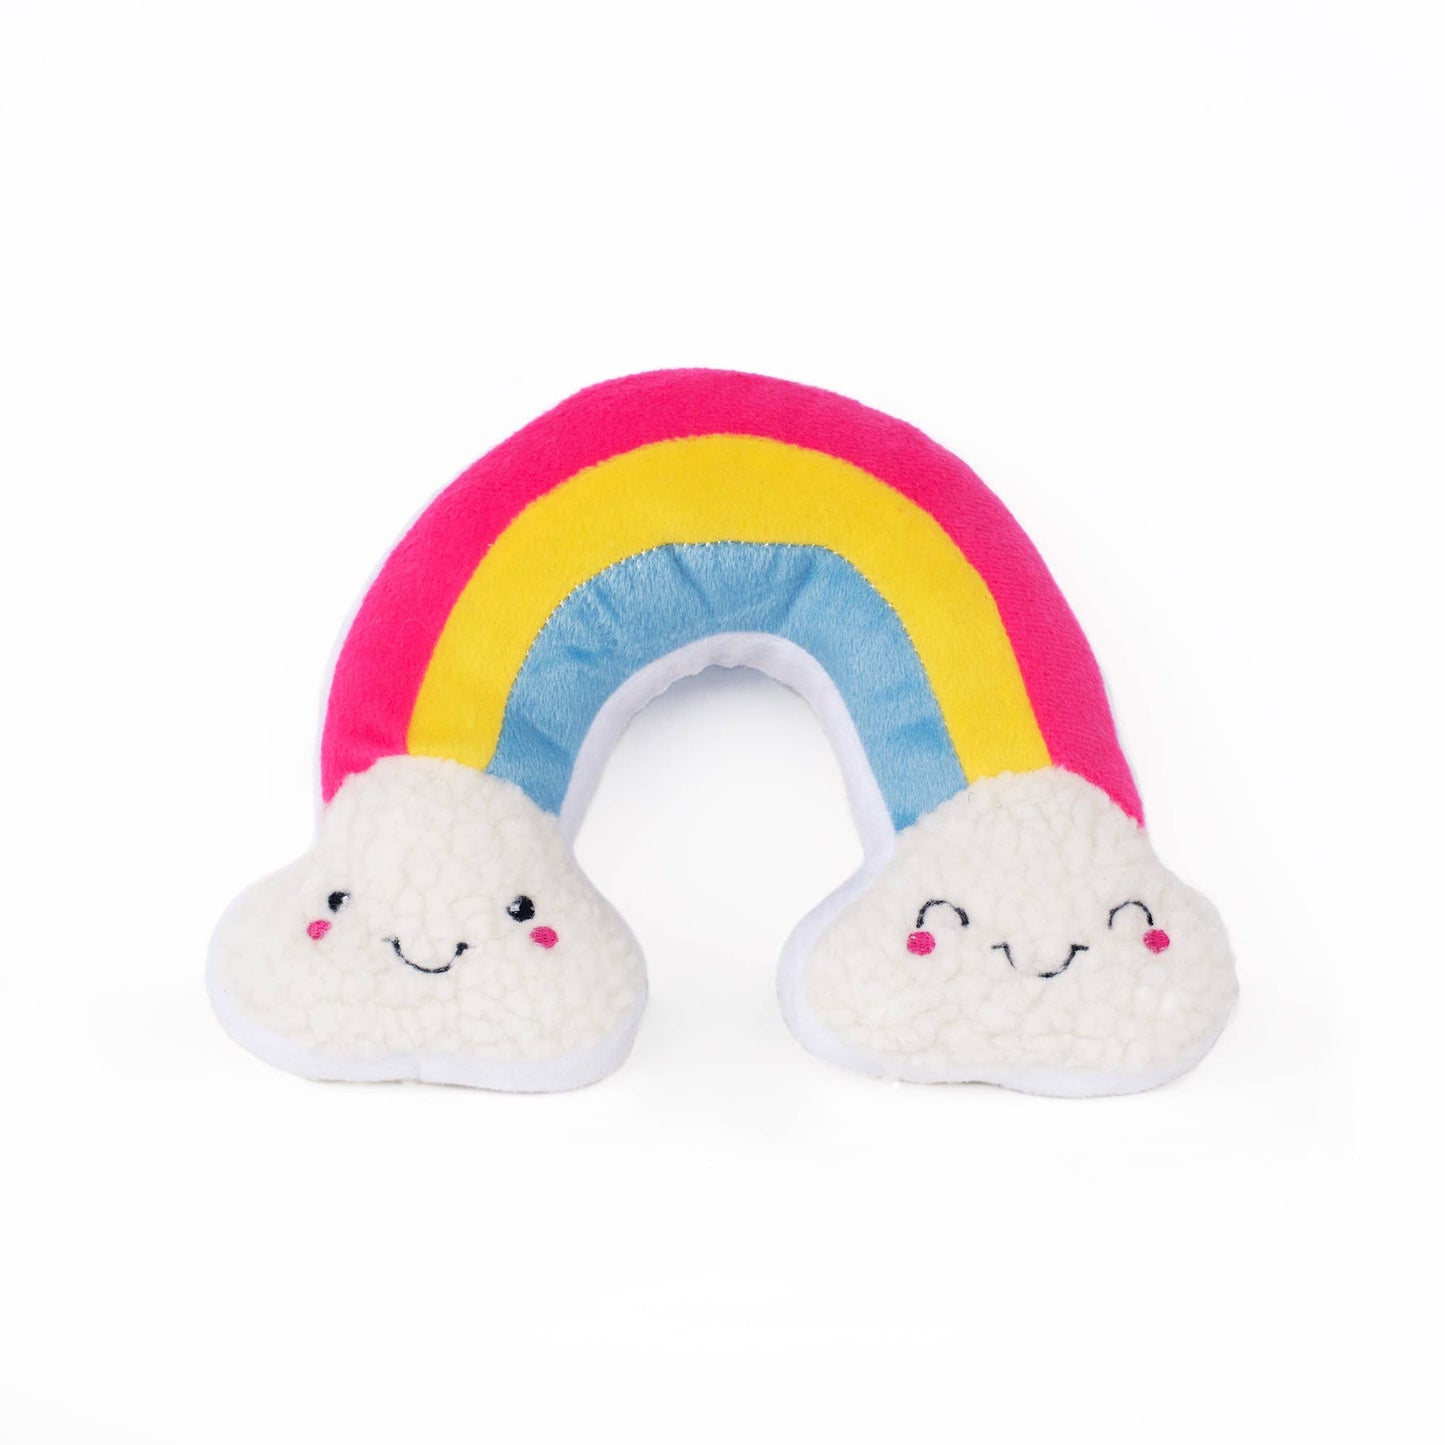 Squeakie Pattiez - Rainbow - Plush Dog Toy